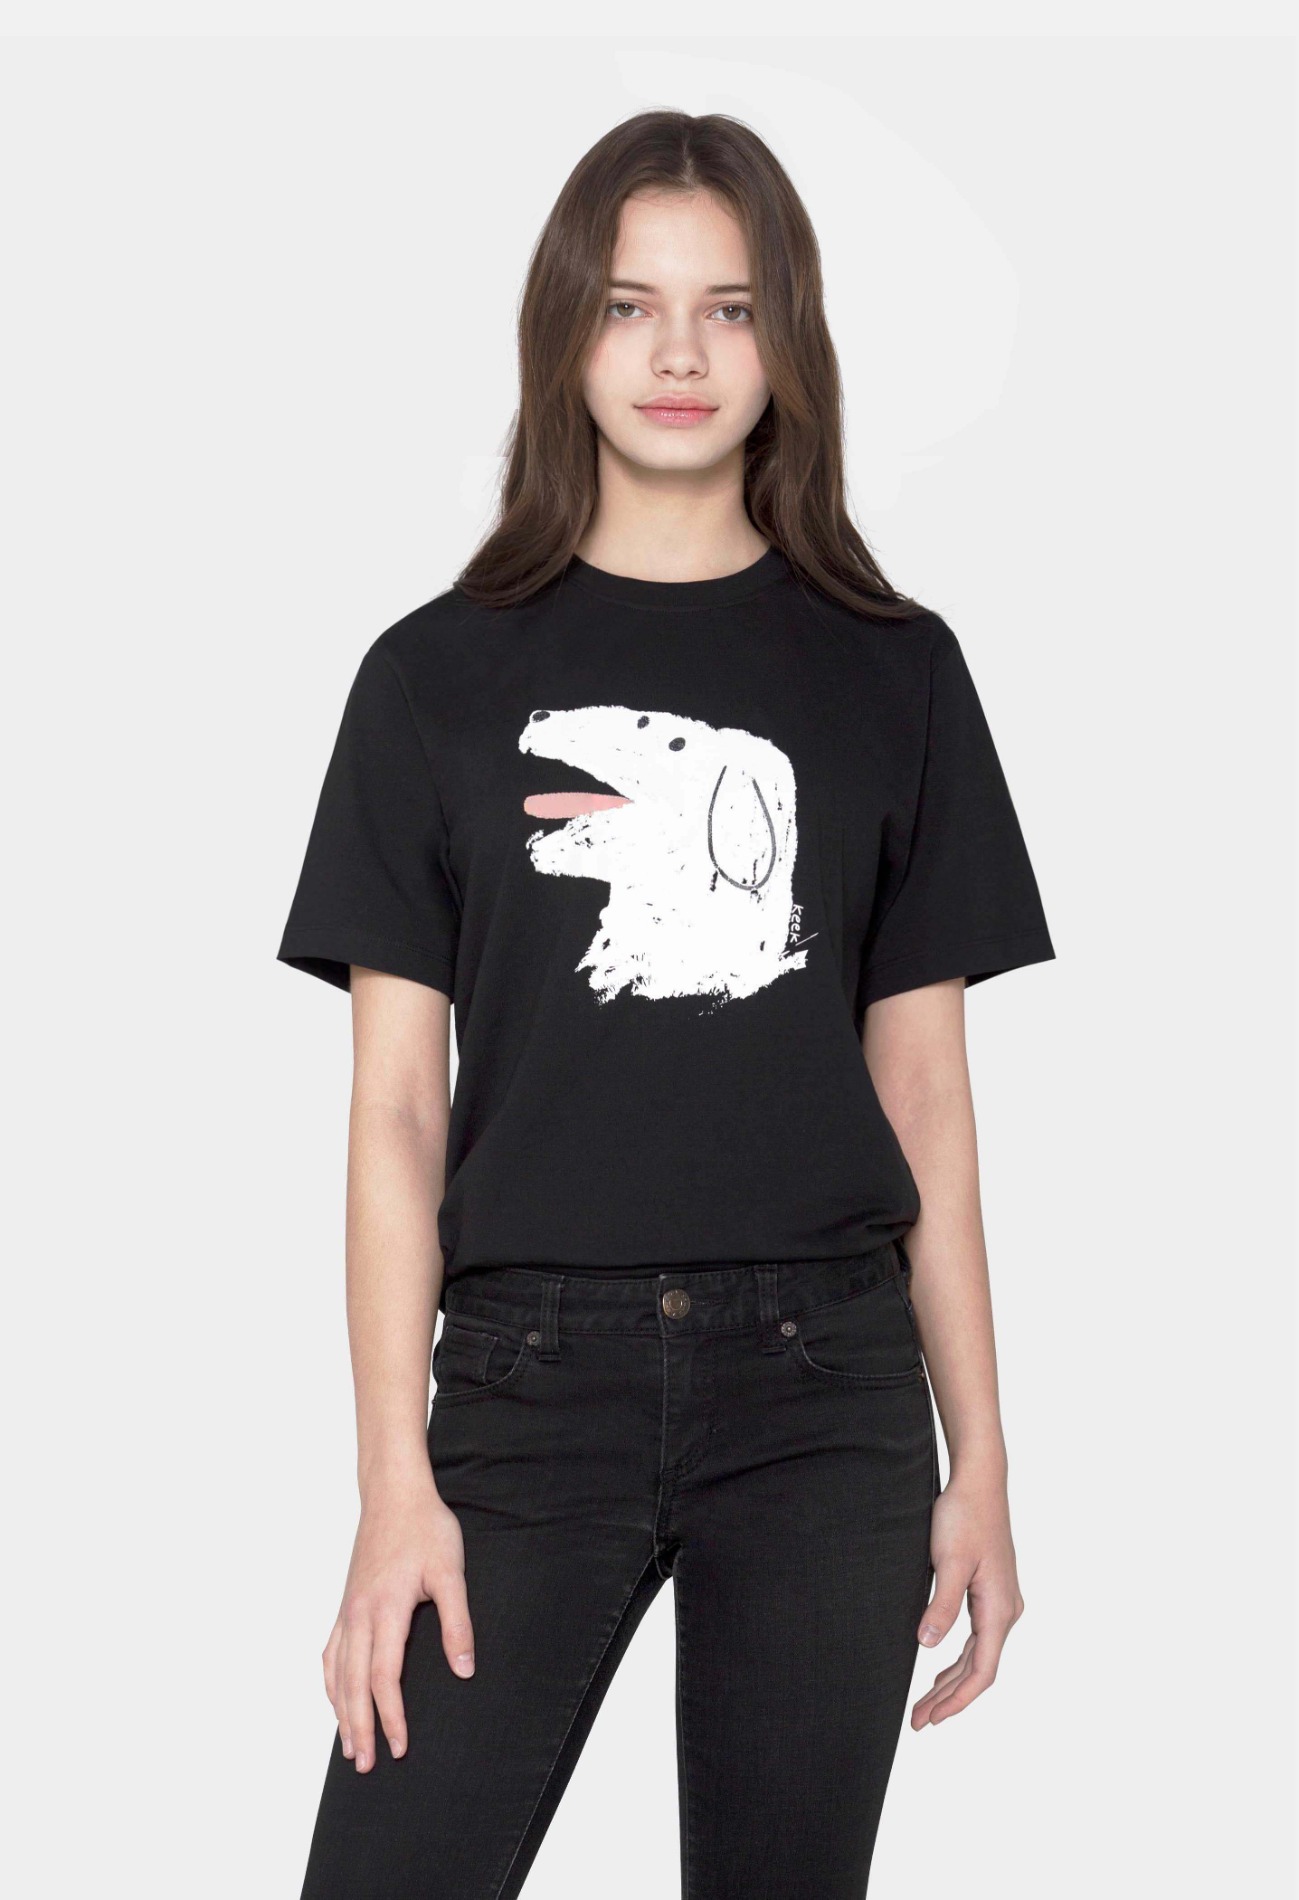 keek [Unisex] Doggy T-shirts - Black 스트릿패션 유니섹스브랜드 커플시밀러룩 남자쇼핑몰 여성의류쇼핑몰 후드티 힙색